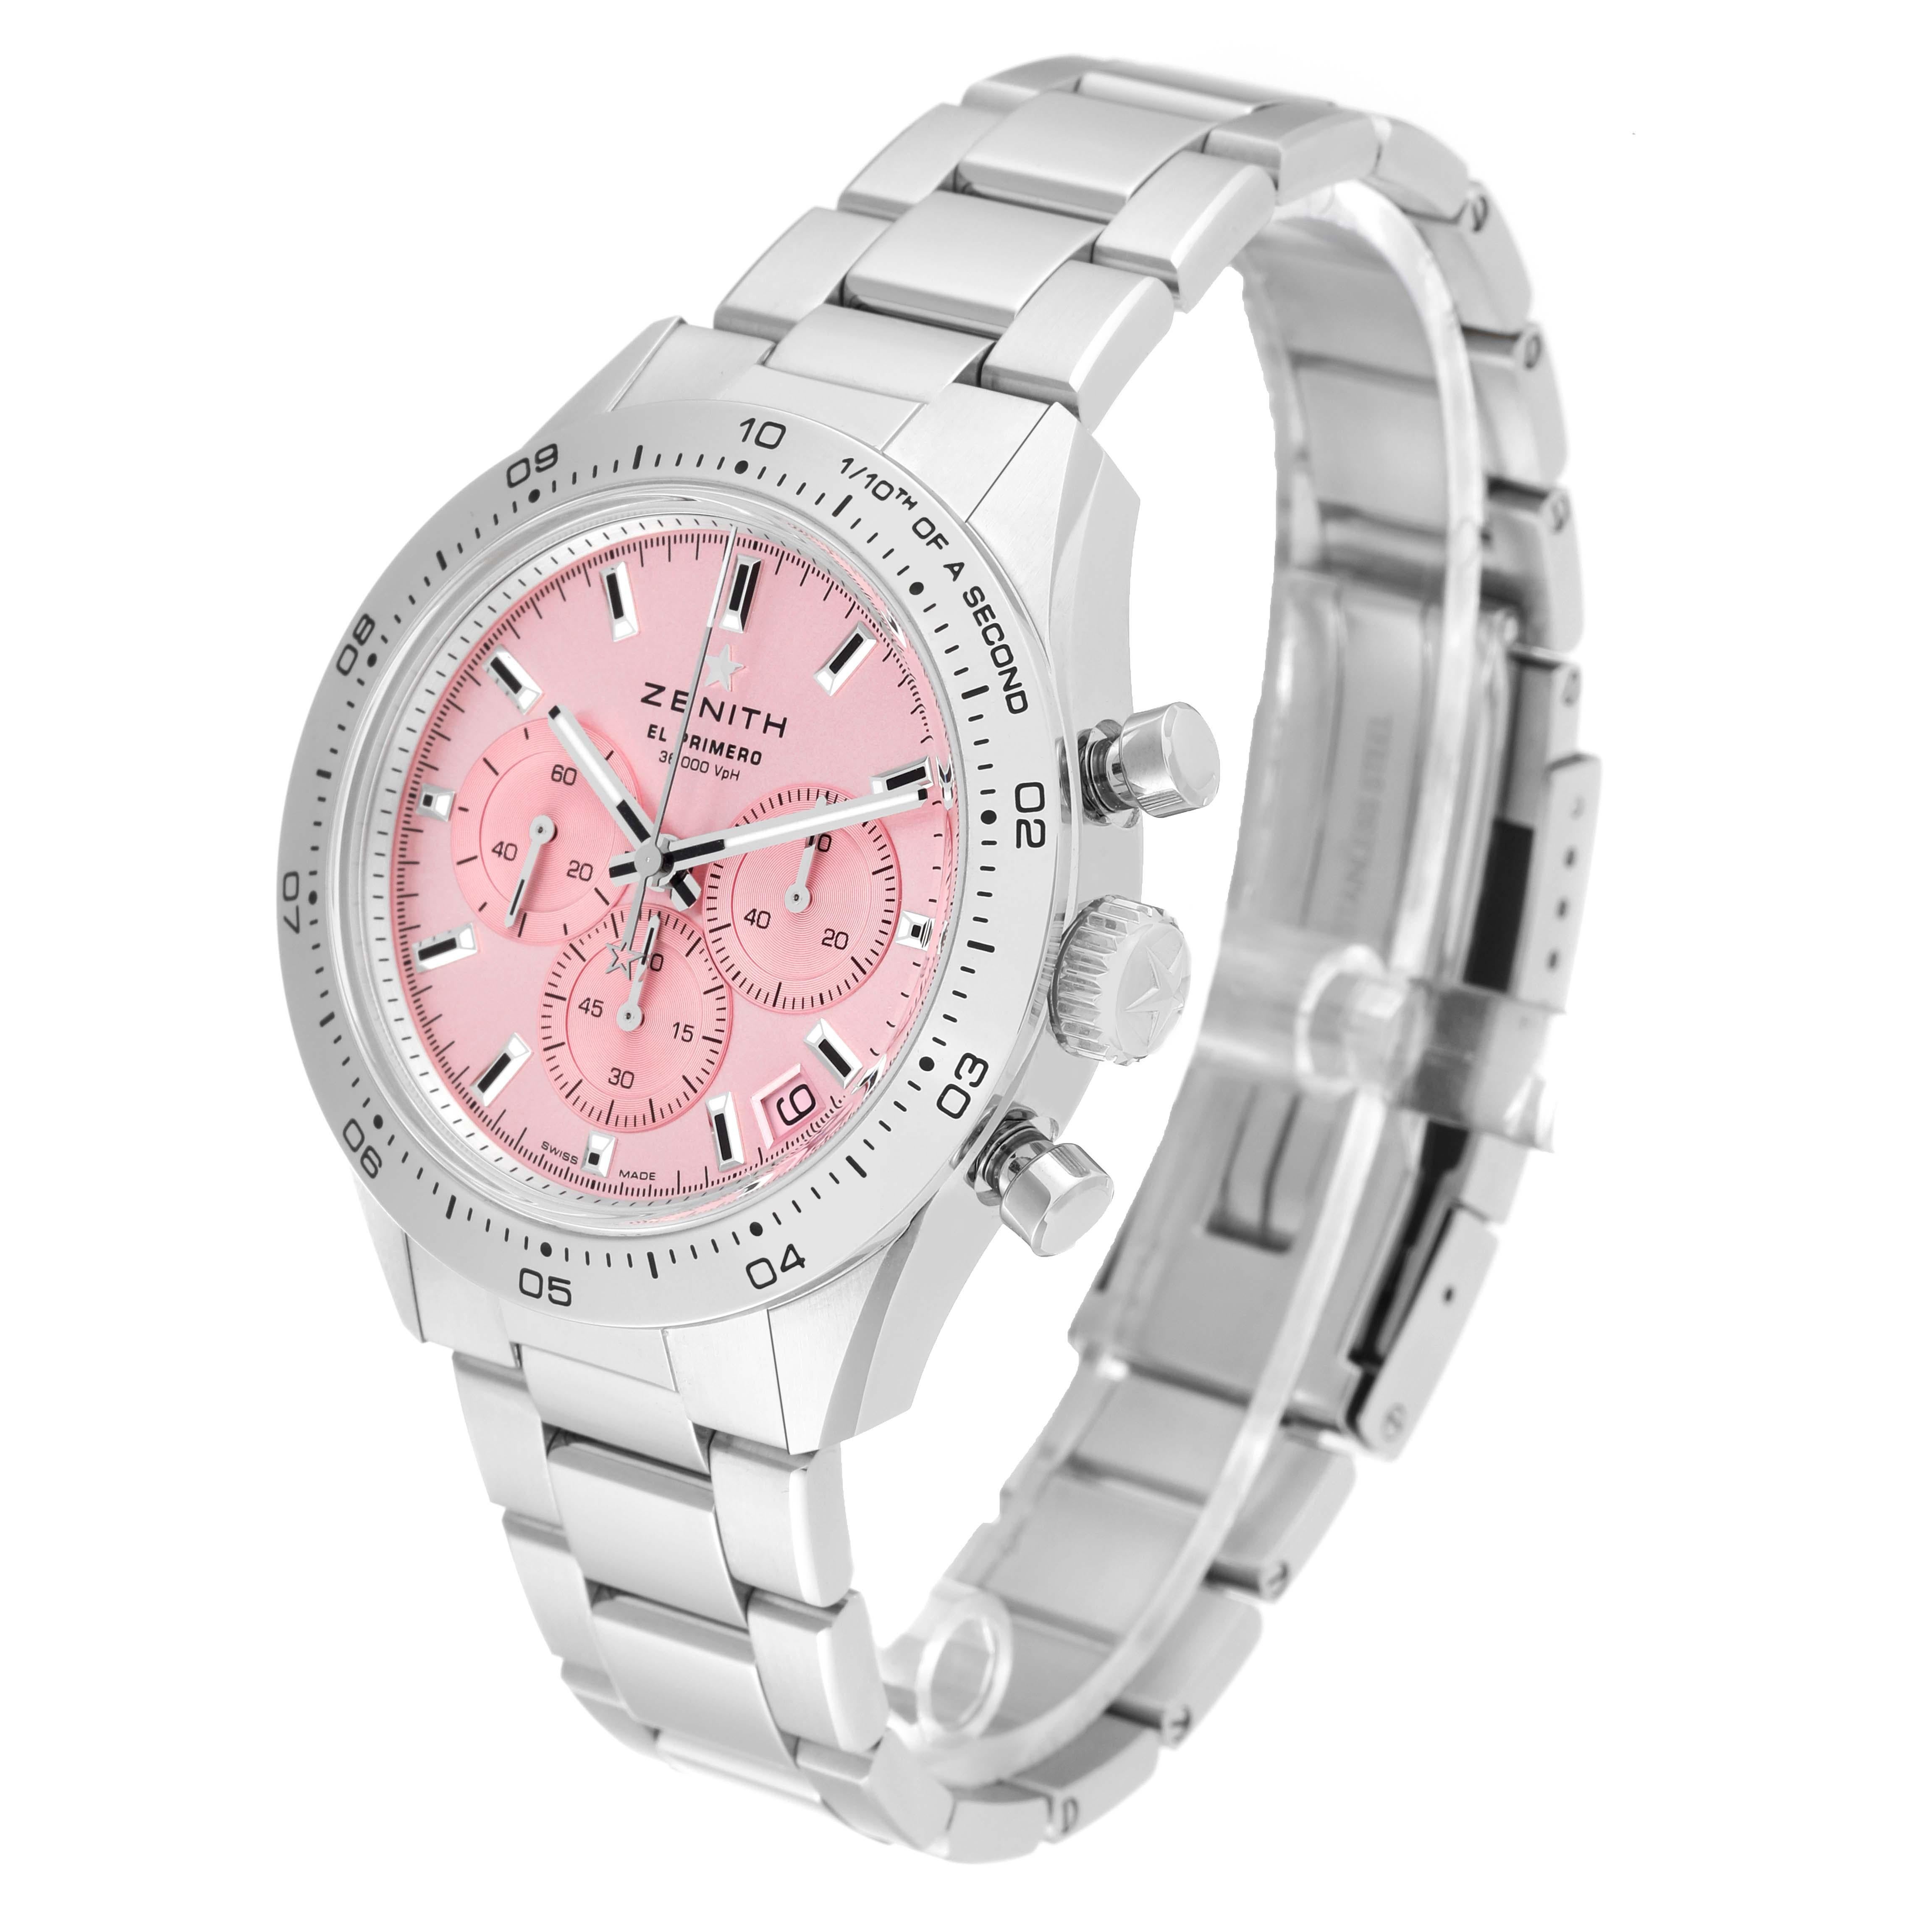 Zenith Chronomaster Sport Pink Limited Edition Steel Watch 03.3109.3600 Unworn 3